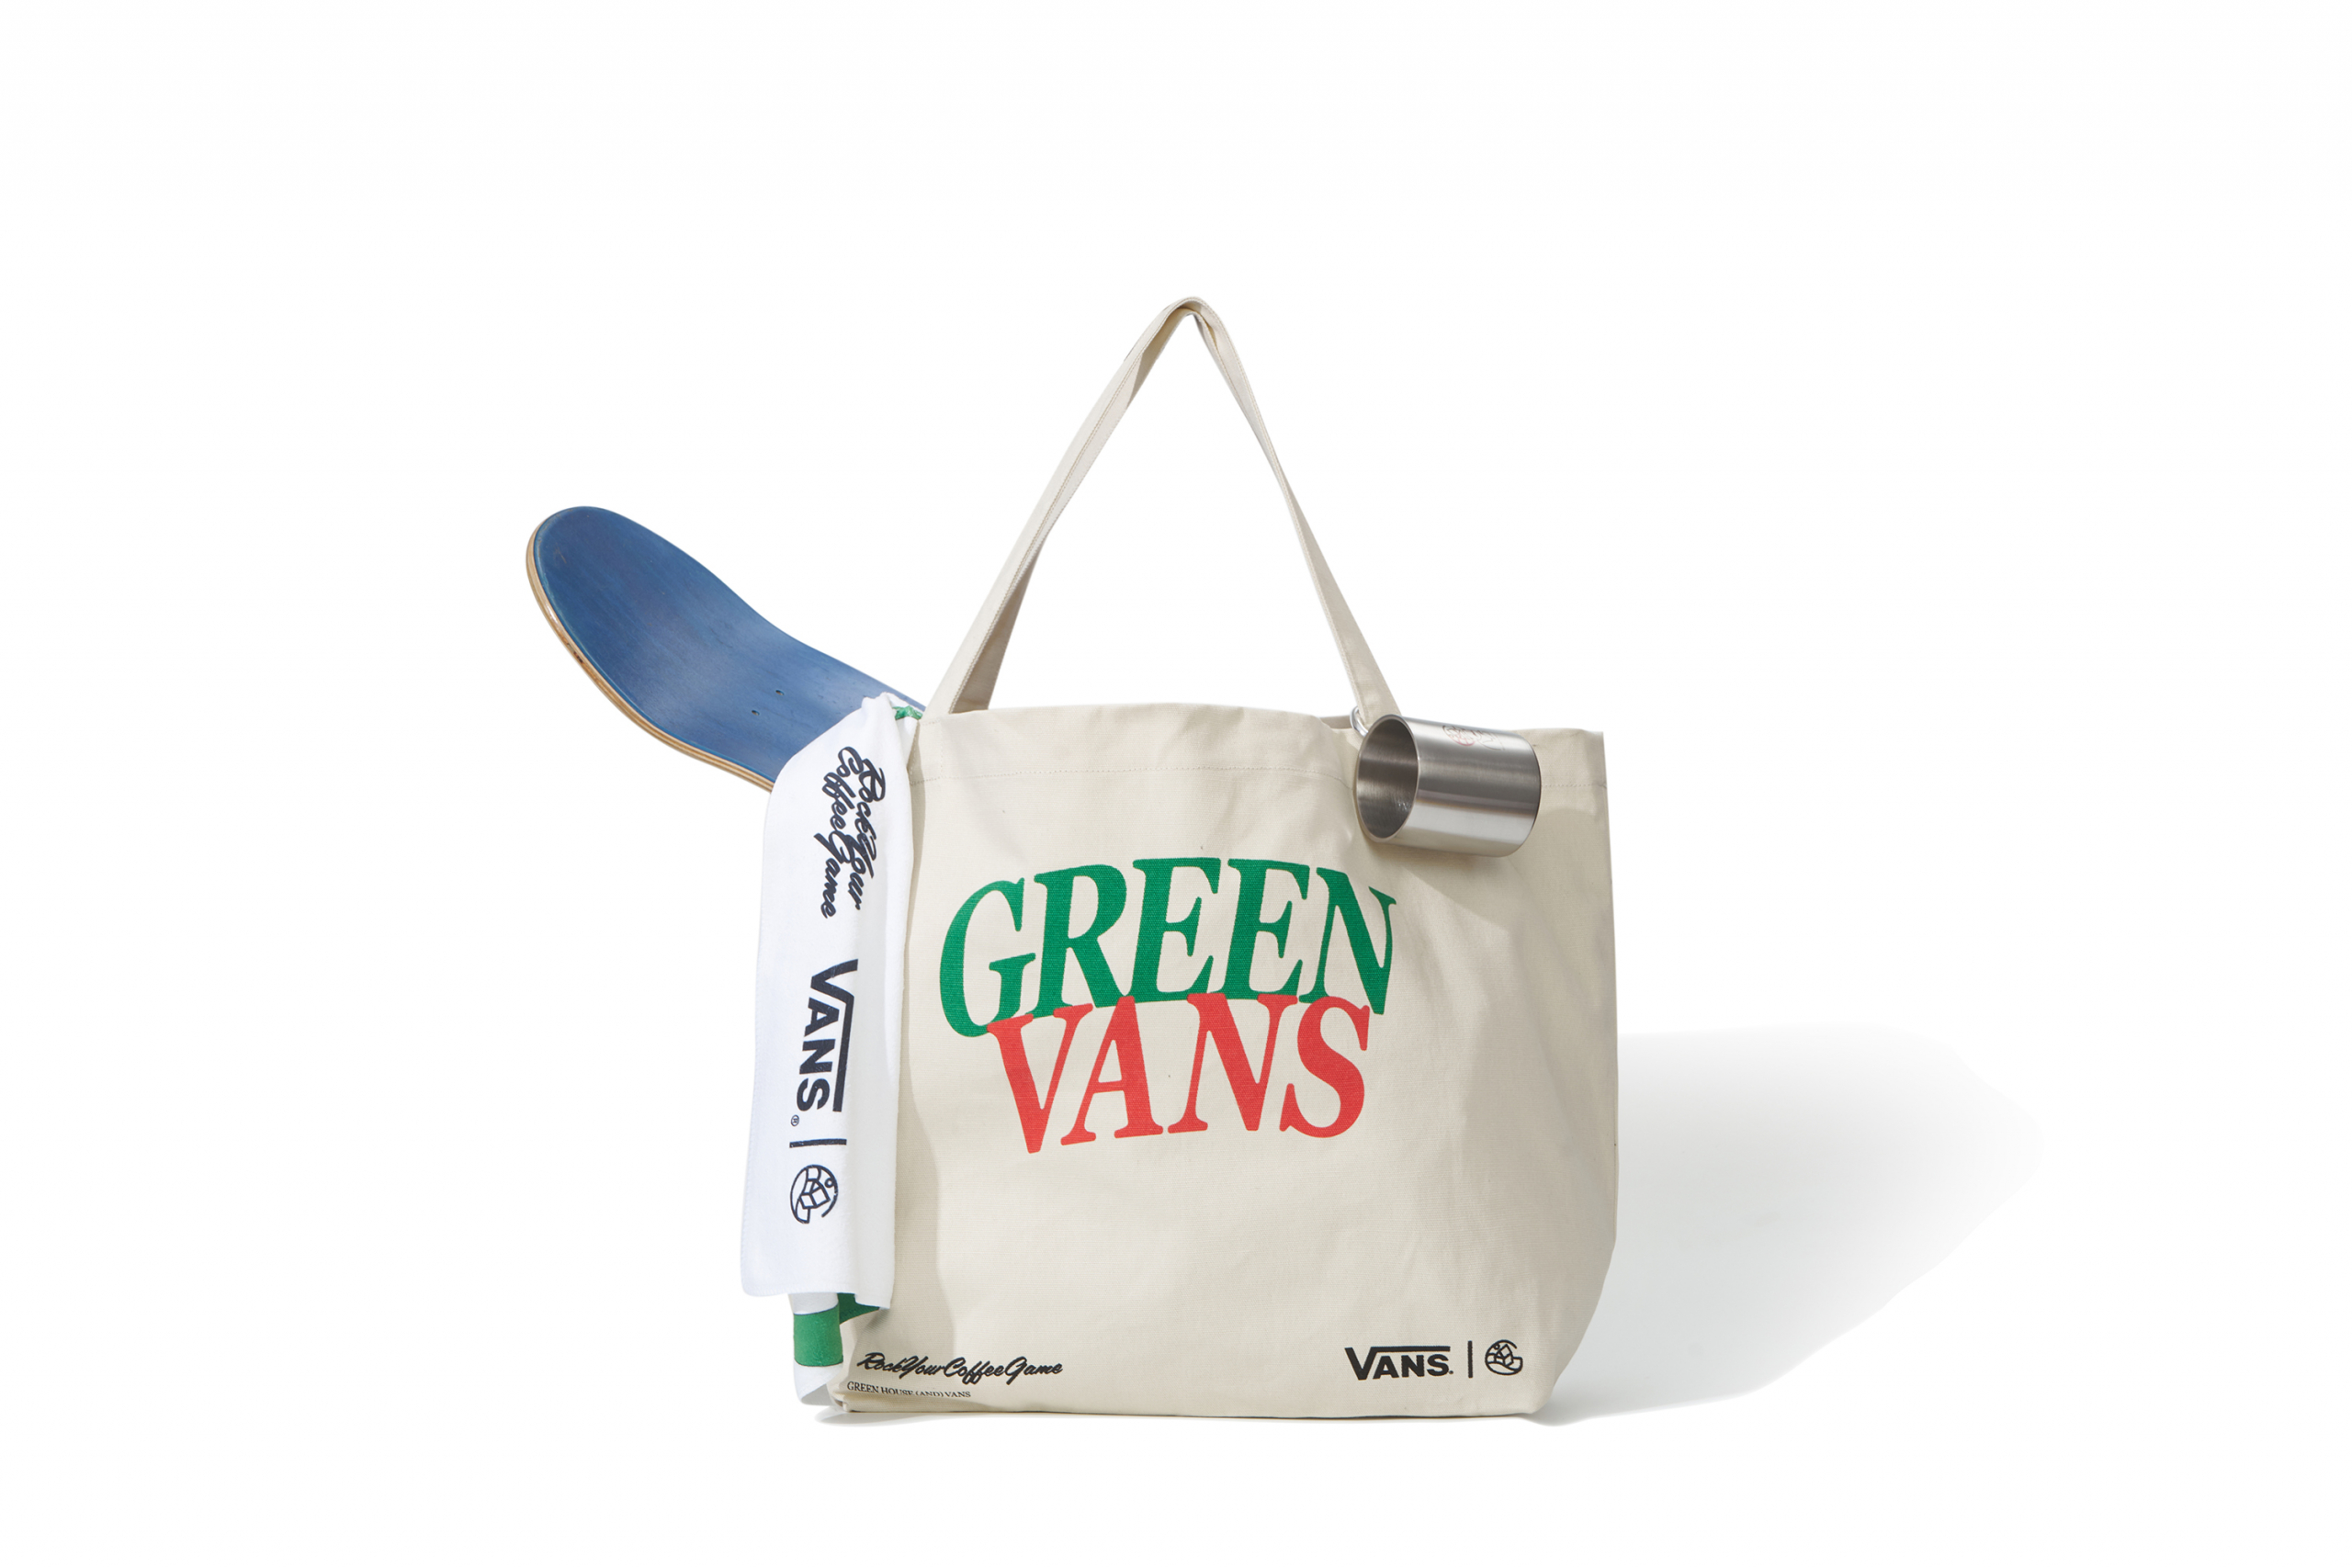 创意单位及咖啡店 GREEN HOUSE 携手 VANS 开设「GREEN VANS 限时咖啡店」